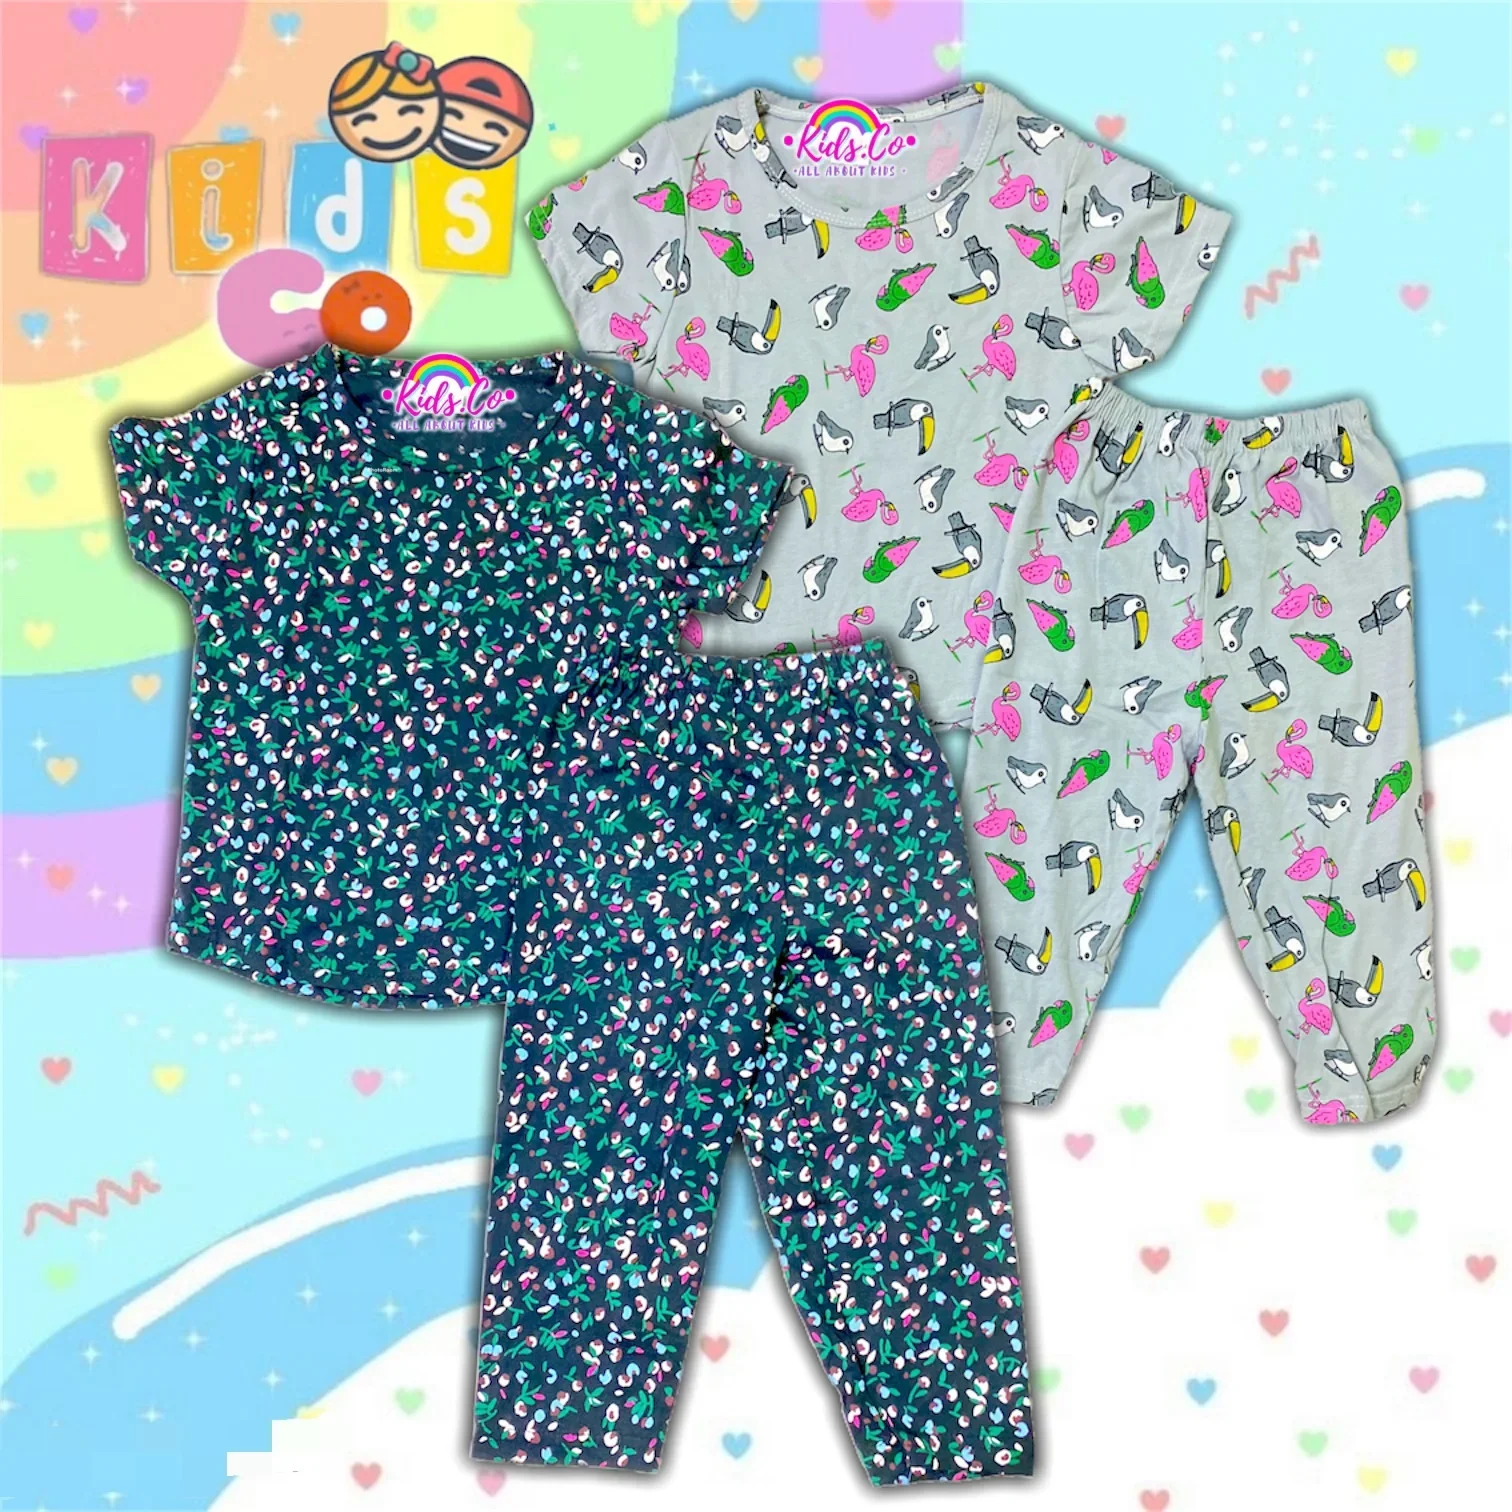 Readystock Pyjamas Printed Cotton Kids Size